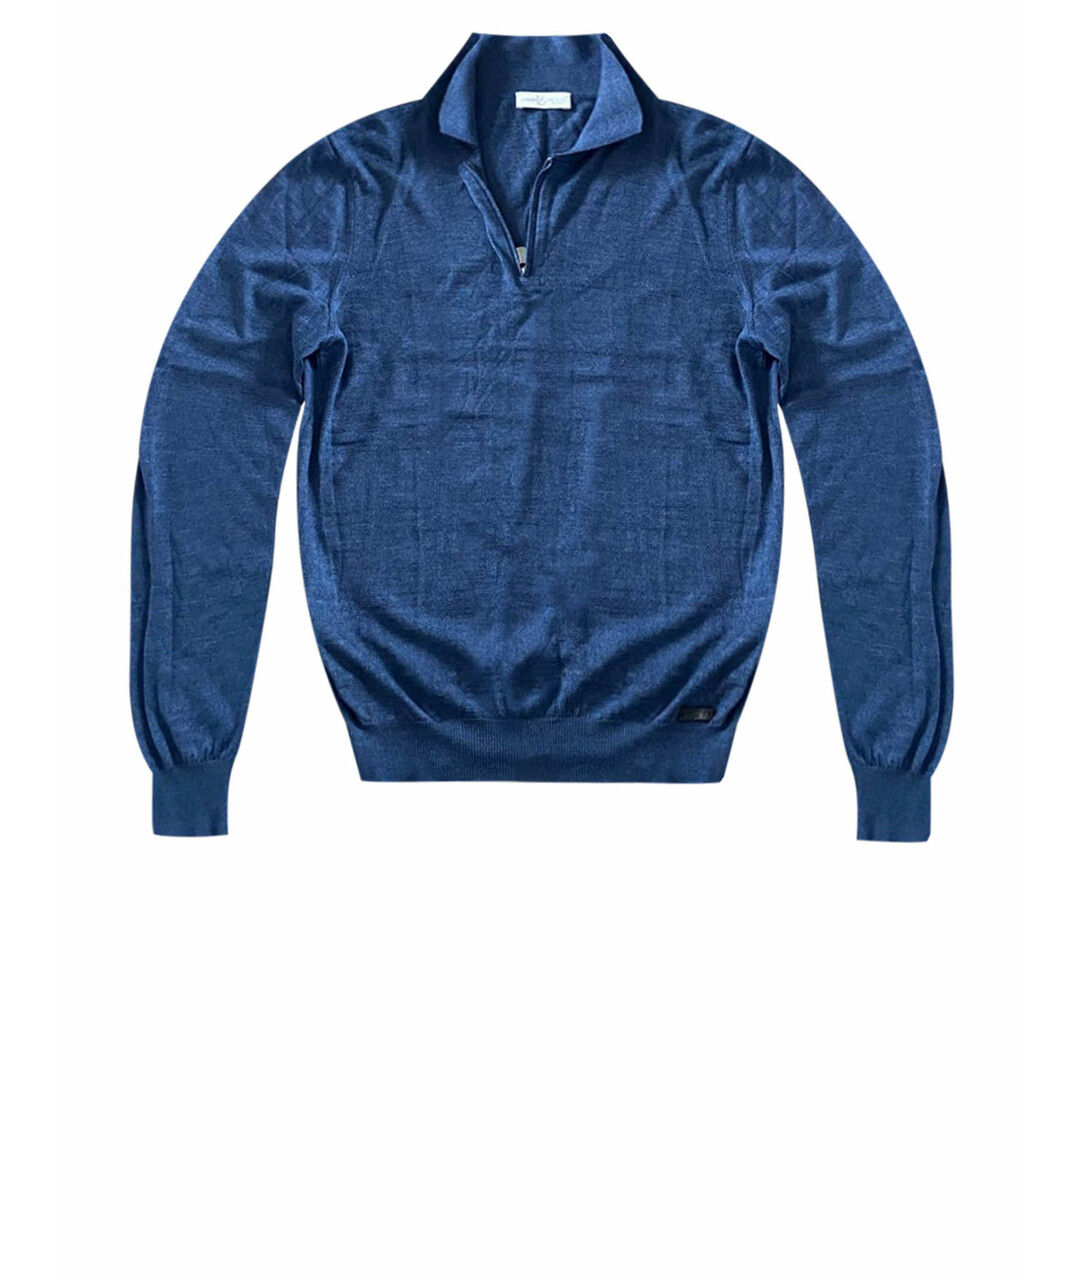 BILANCIONI Голубой джемпер / свитер, фото 1